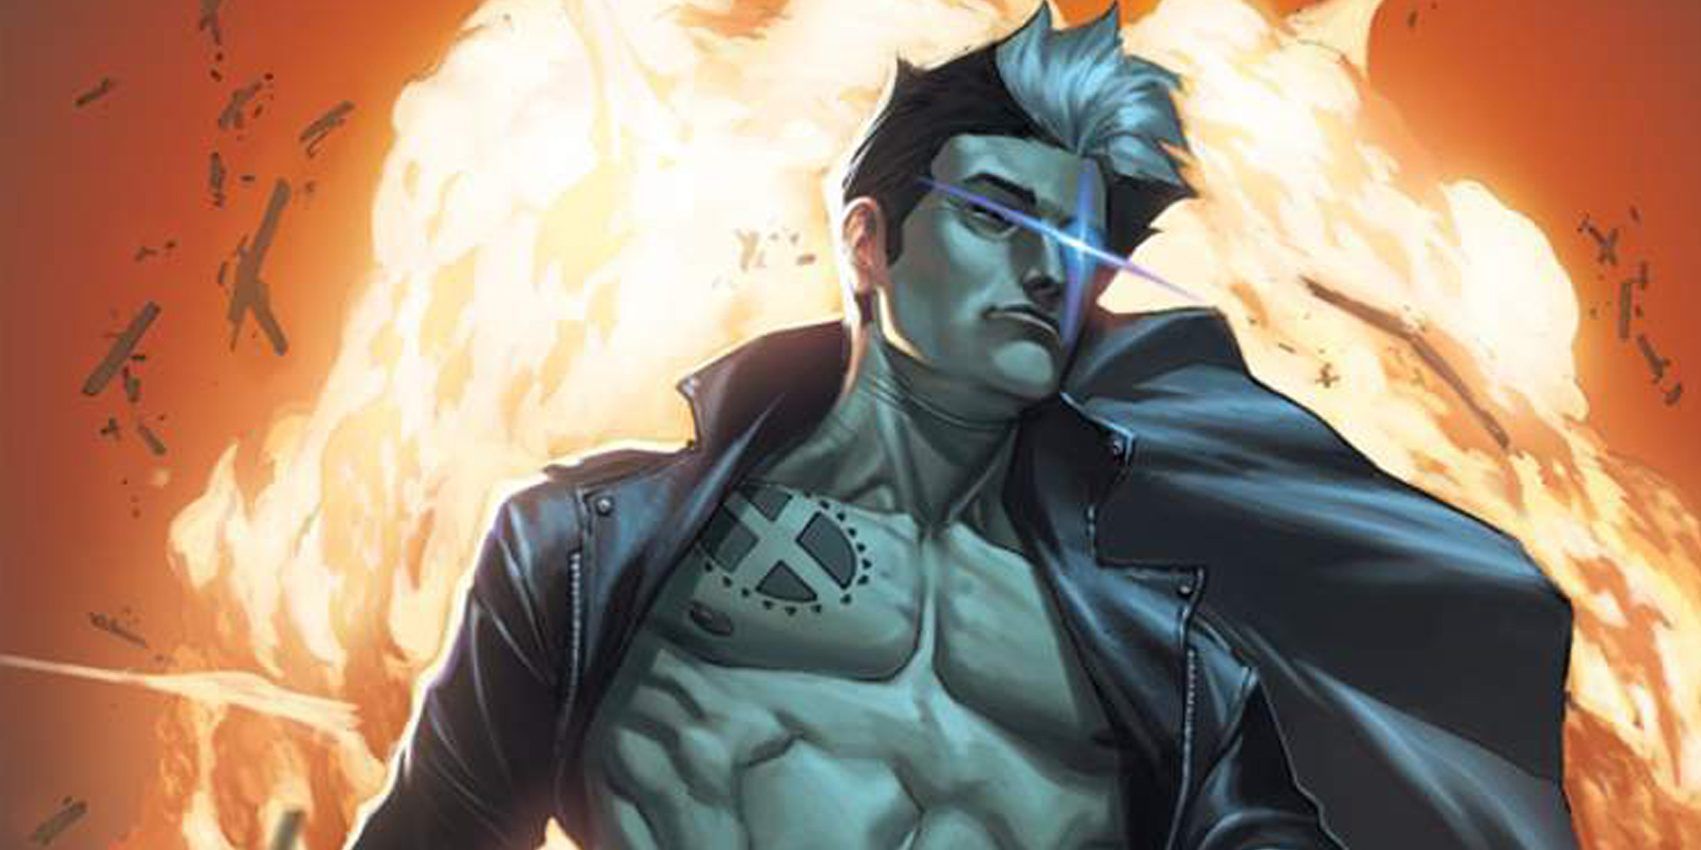 Nate Gray, ou o X-Man, foi uma criação do Senhor Sinistro na Era do Apocalipse para ser o mutante mais poderoso da Marvel, e seus poderes o tornam um deus vivo.